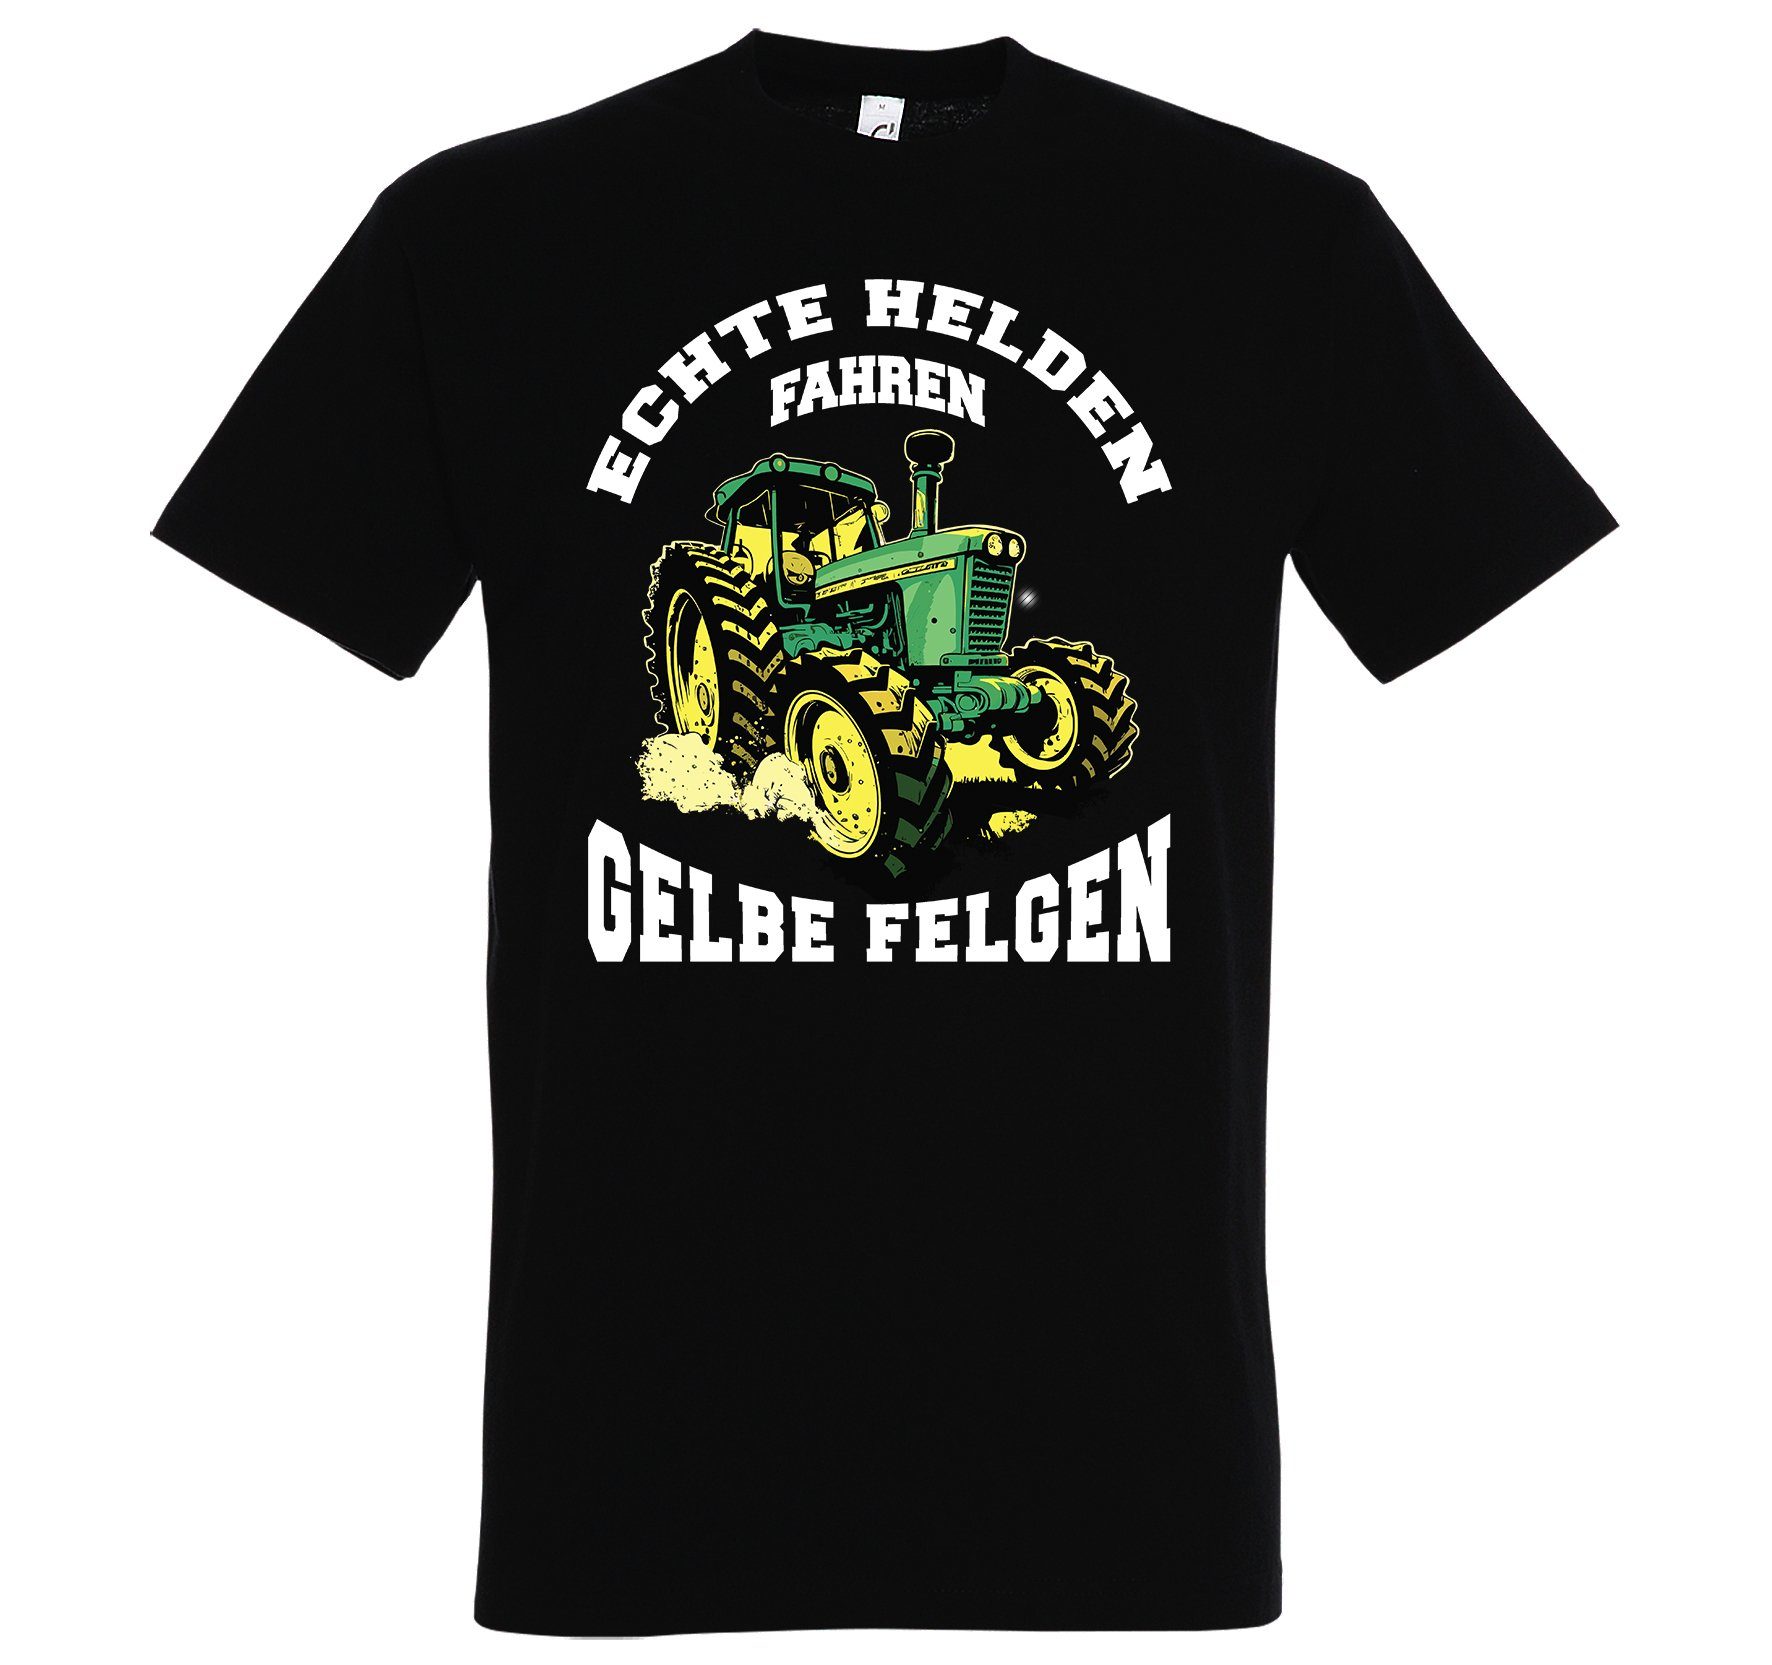 Print-Shirt lustigem Spruch Designz Herren gelbe Youth T-Shirt fahren Felgen" Helden "Echte Schwarz mit